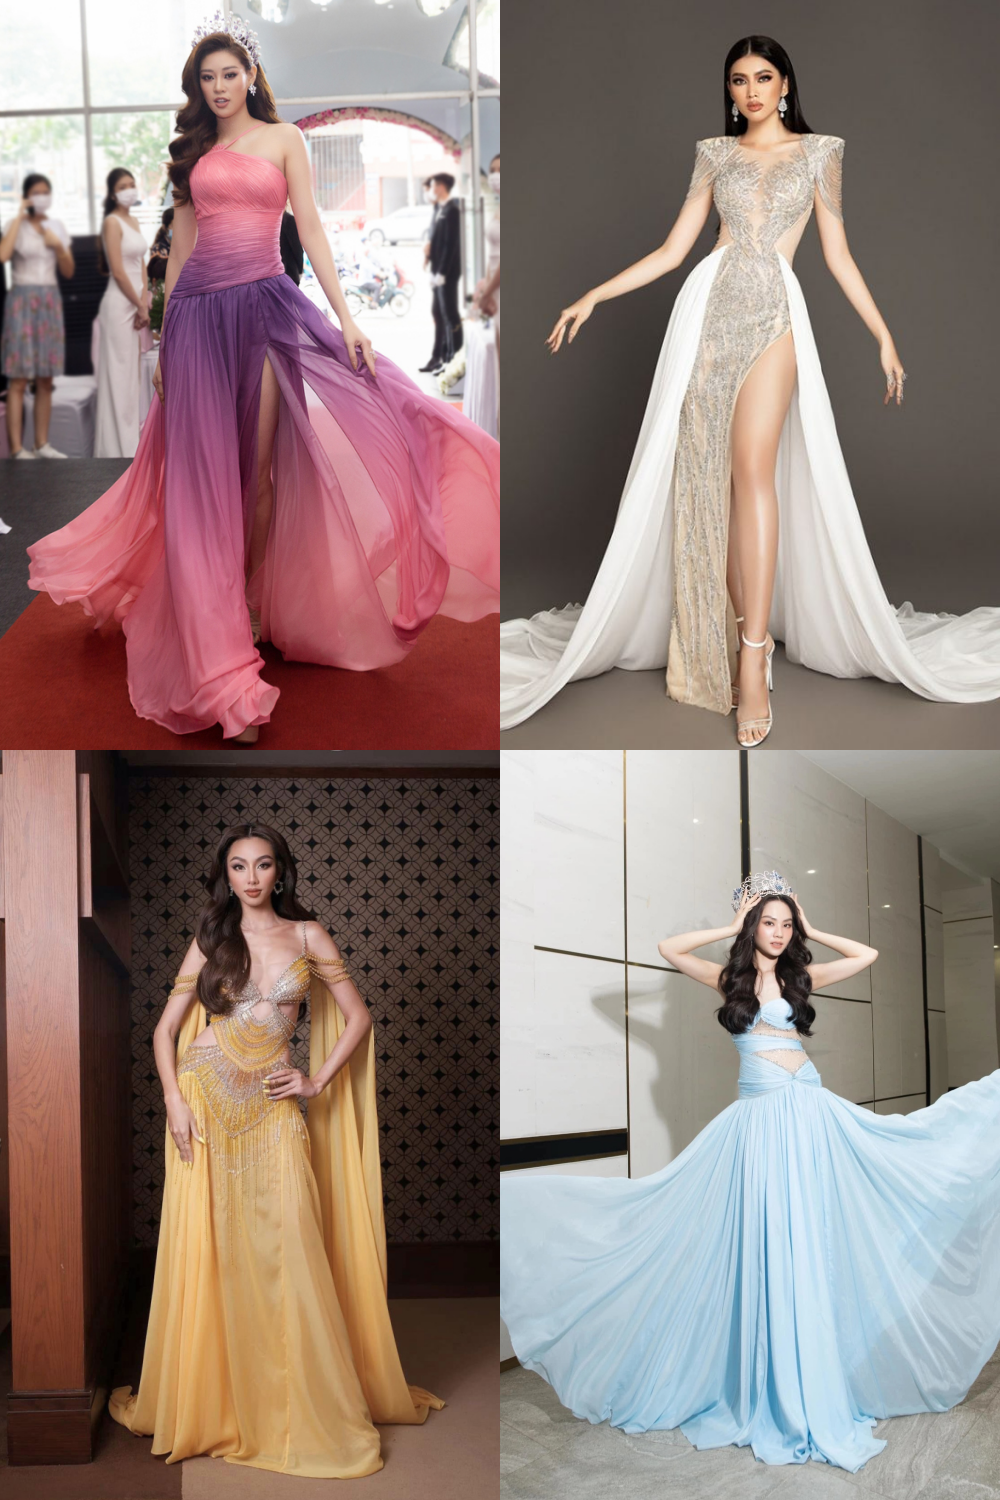 Váy của Hoa hậu Mai Phương giúp 3 người đẹp tự tin tỏa sáng - Ảnh 4.